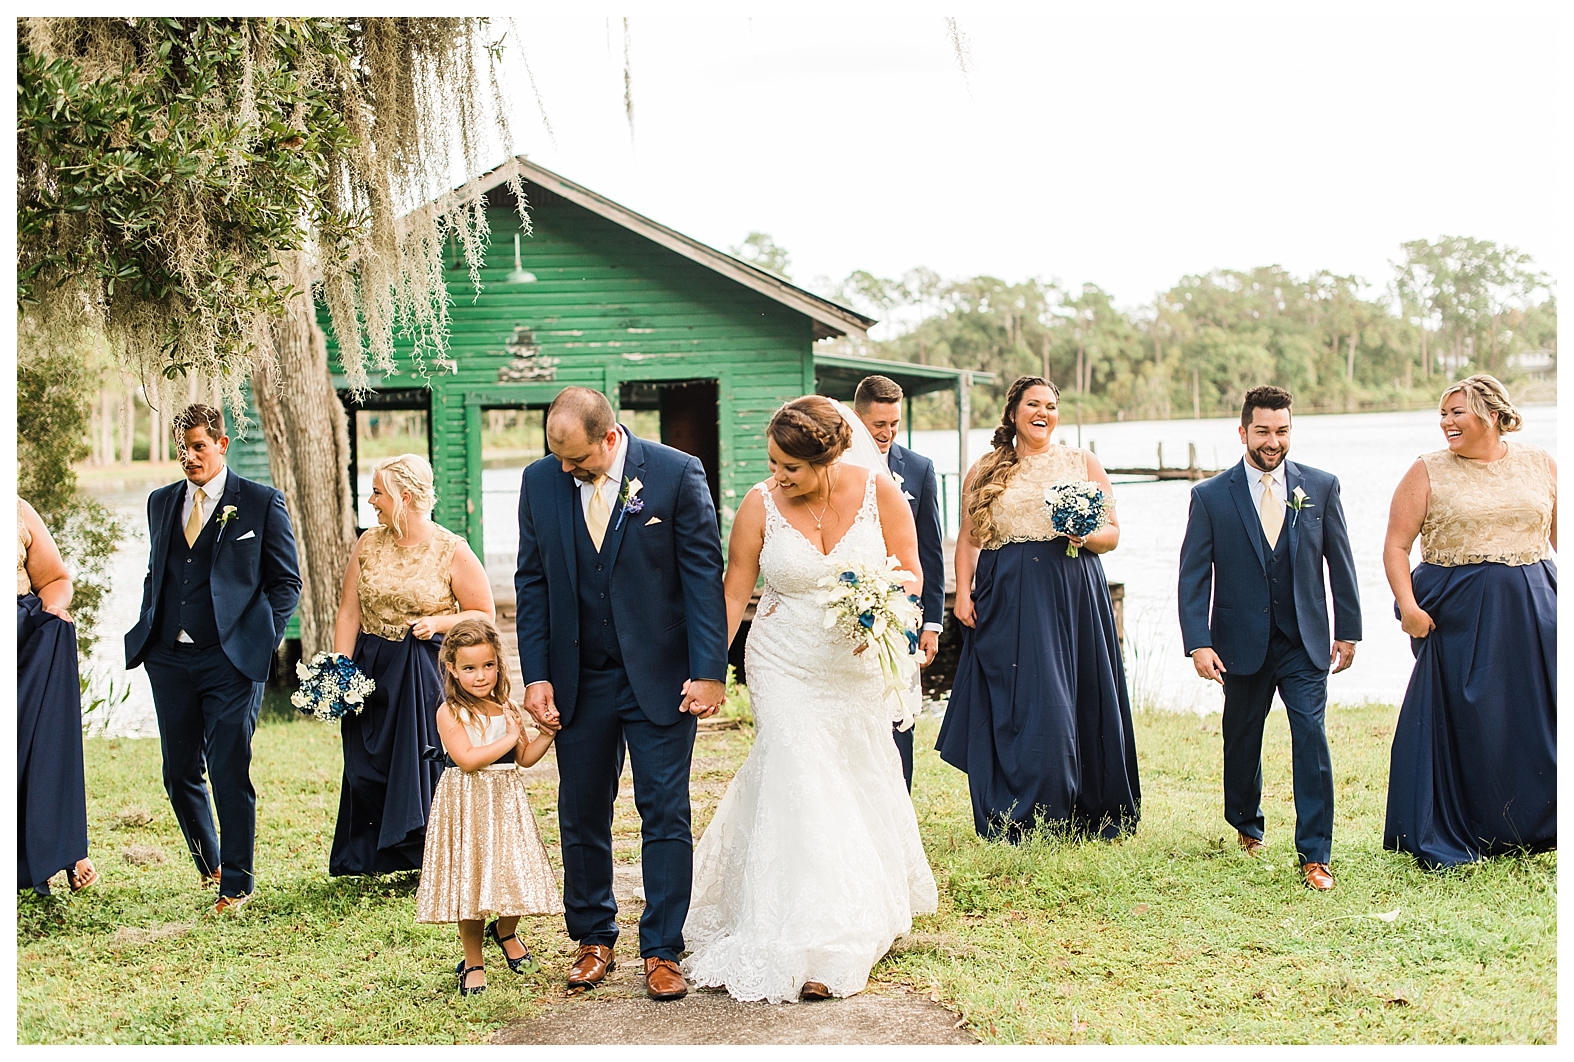 Wedding at The Barn at Crescent Lake - Sara and Chad - Tampa Wedding Photographer